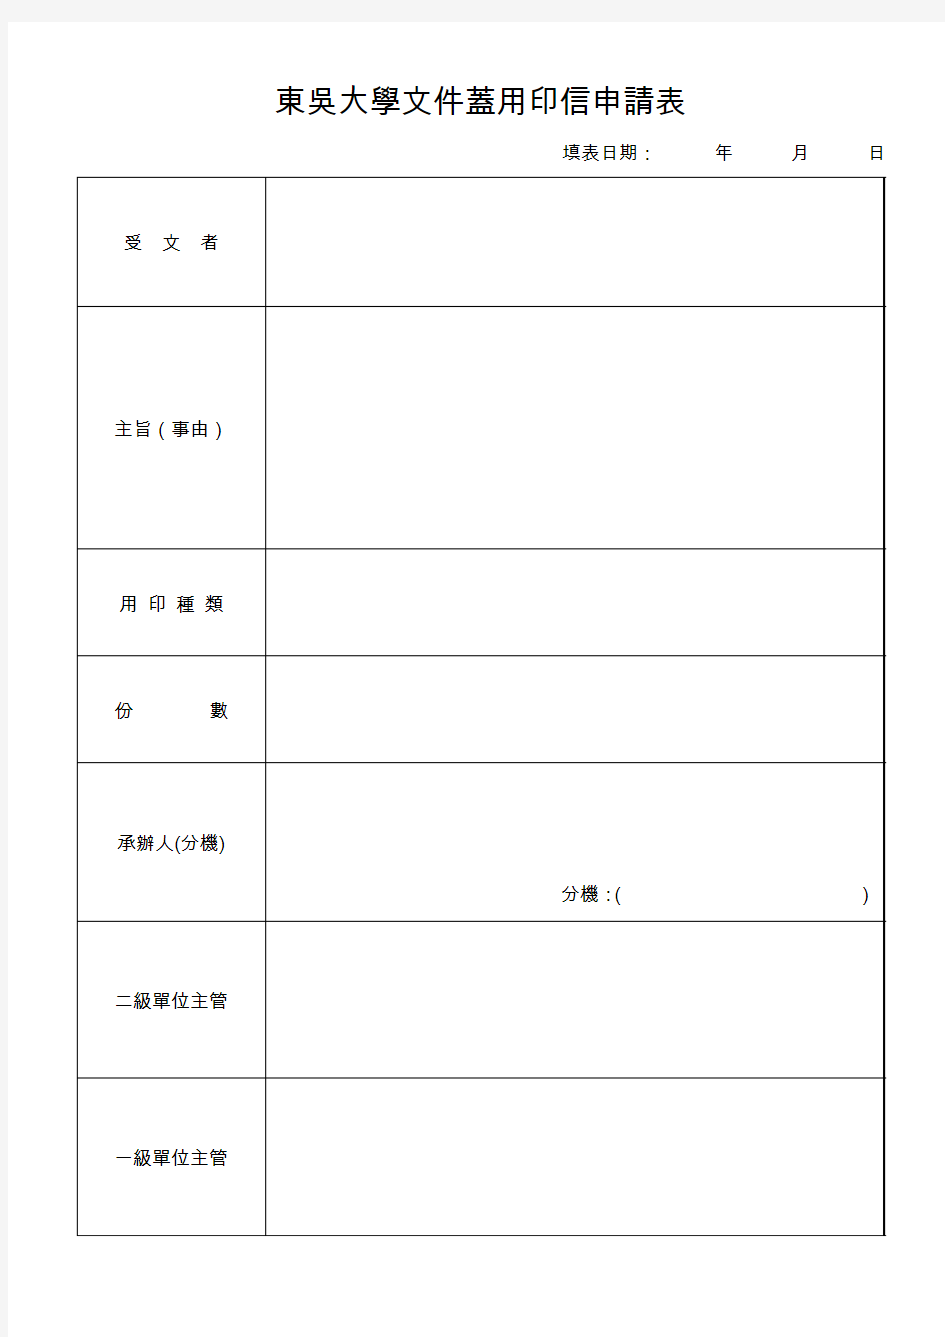 东吴大学文件盖用印信申请表